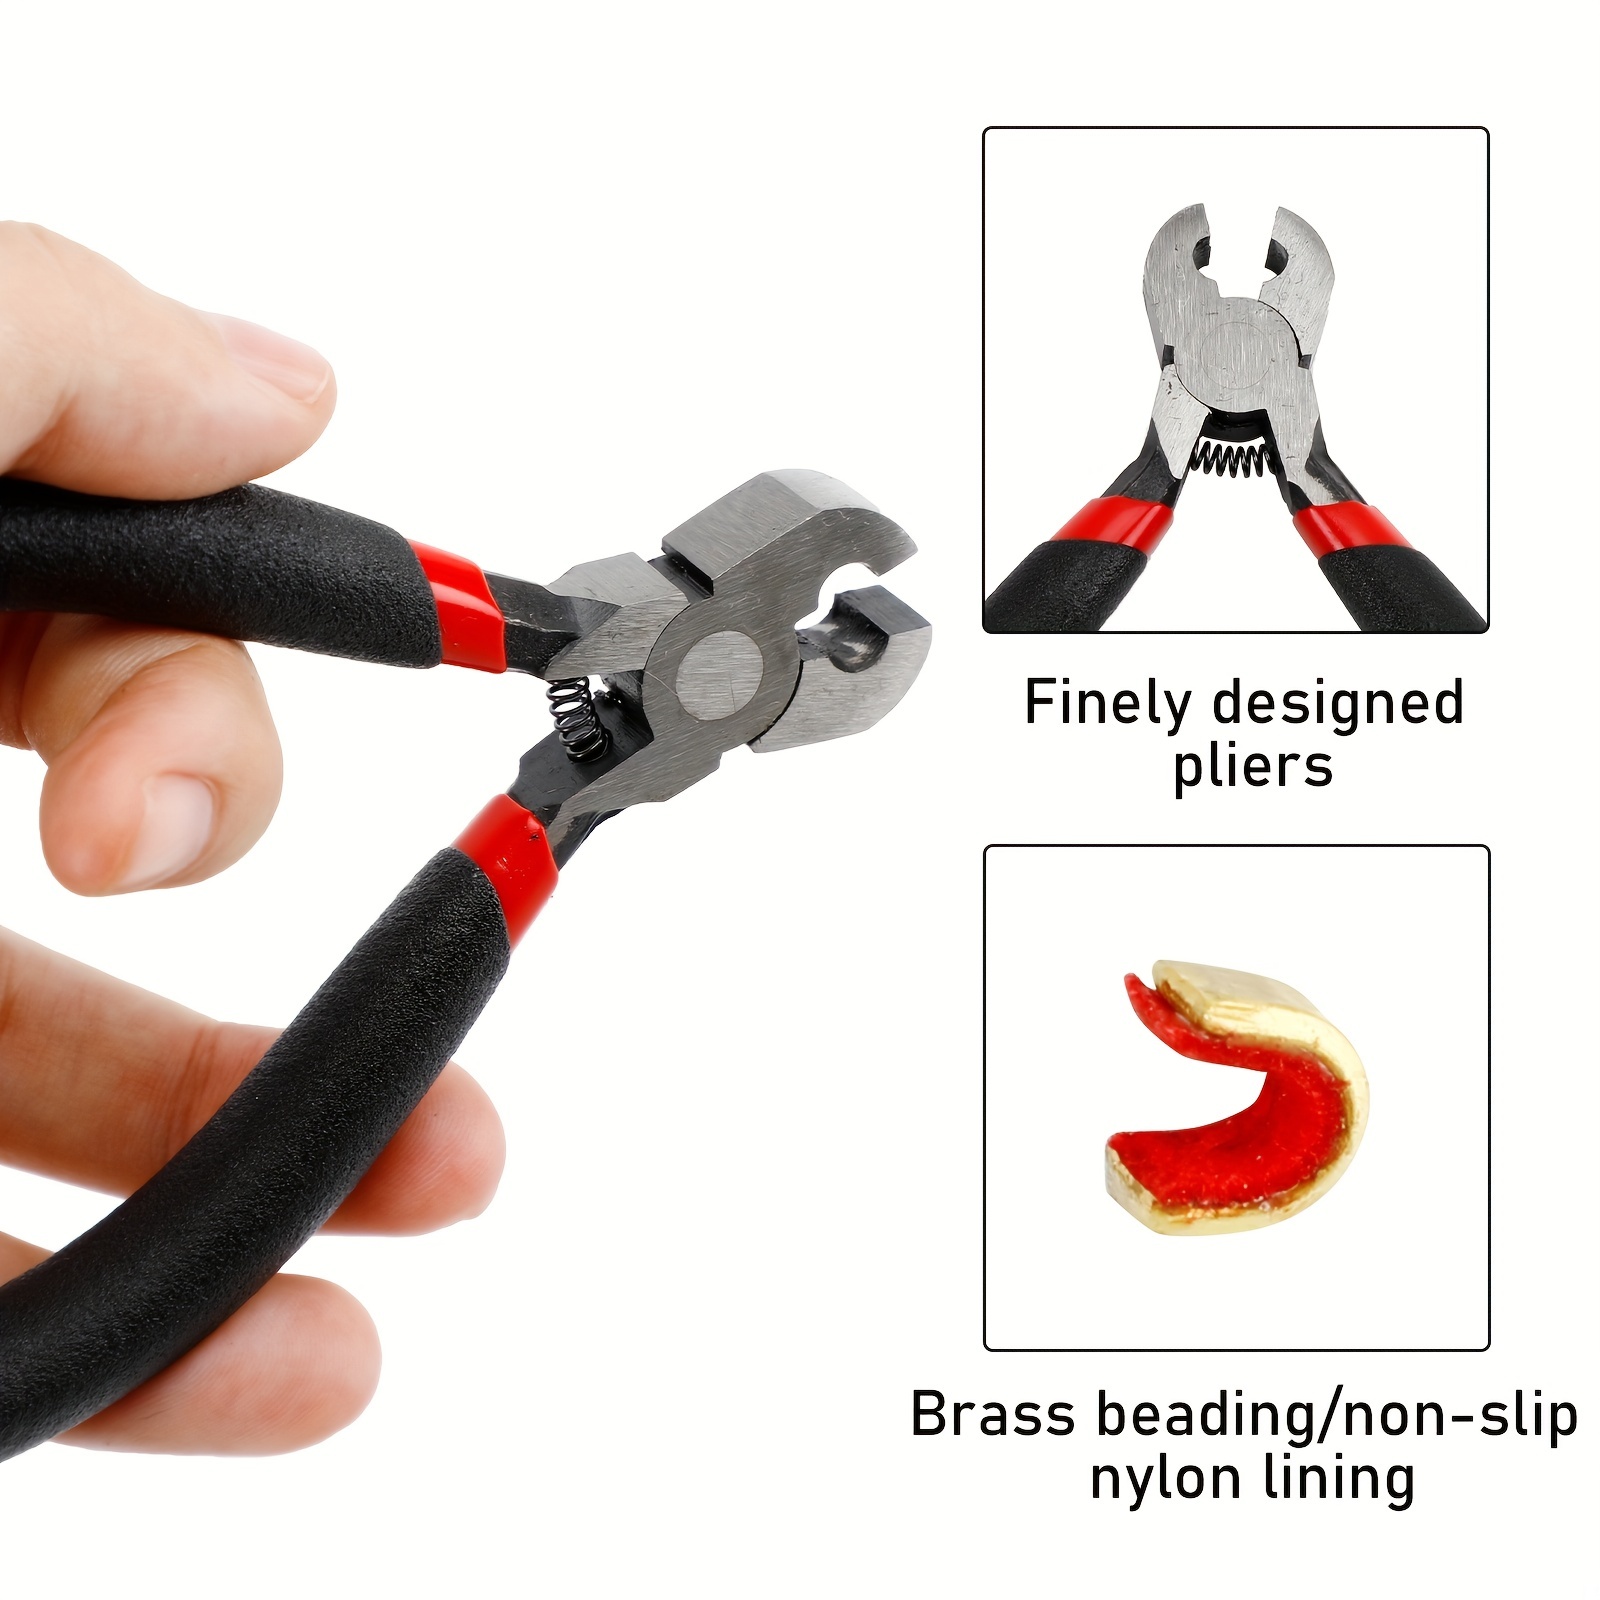 D-Loop Pliers